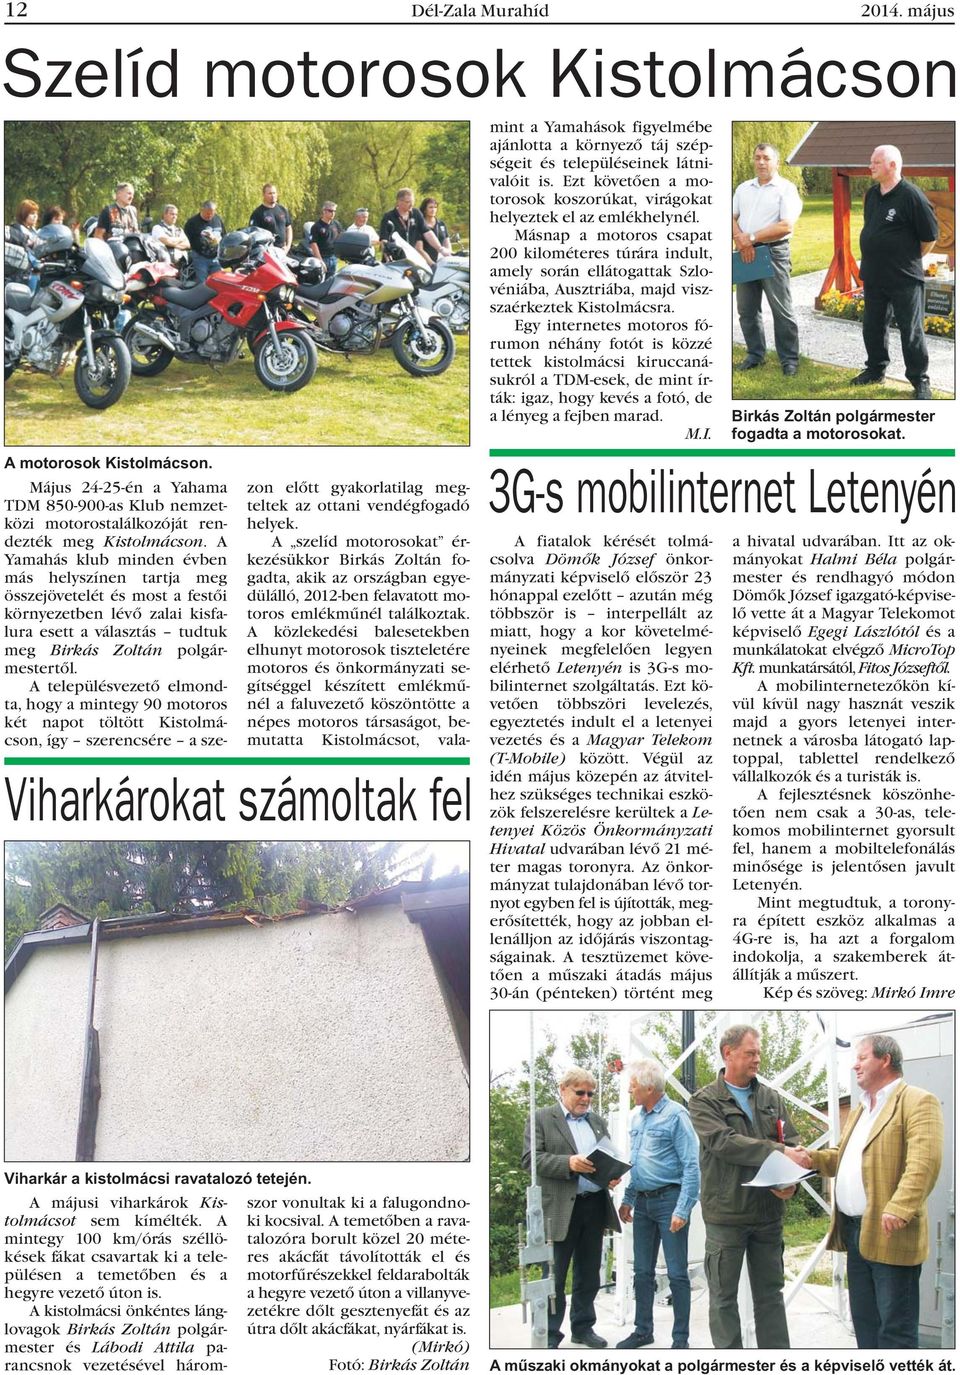 A településvezetõ elmondta, hogy a mintegy 90 motoros két napot töltött Kistolmácson, így szerencsére a sze- zon elõtt gyakorlatilag megteltek az ottani vendégfogadó helyek.